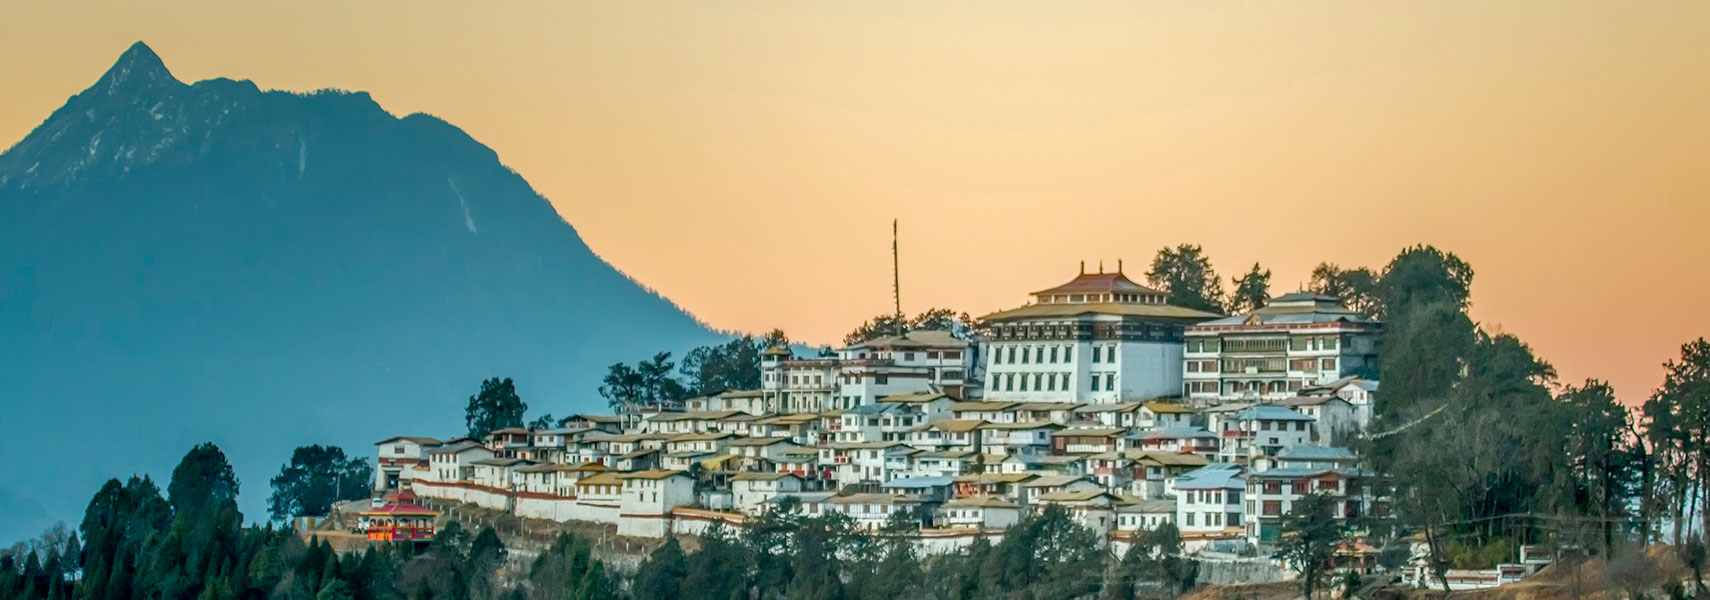 Tawang Monastery in Tawang, India